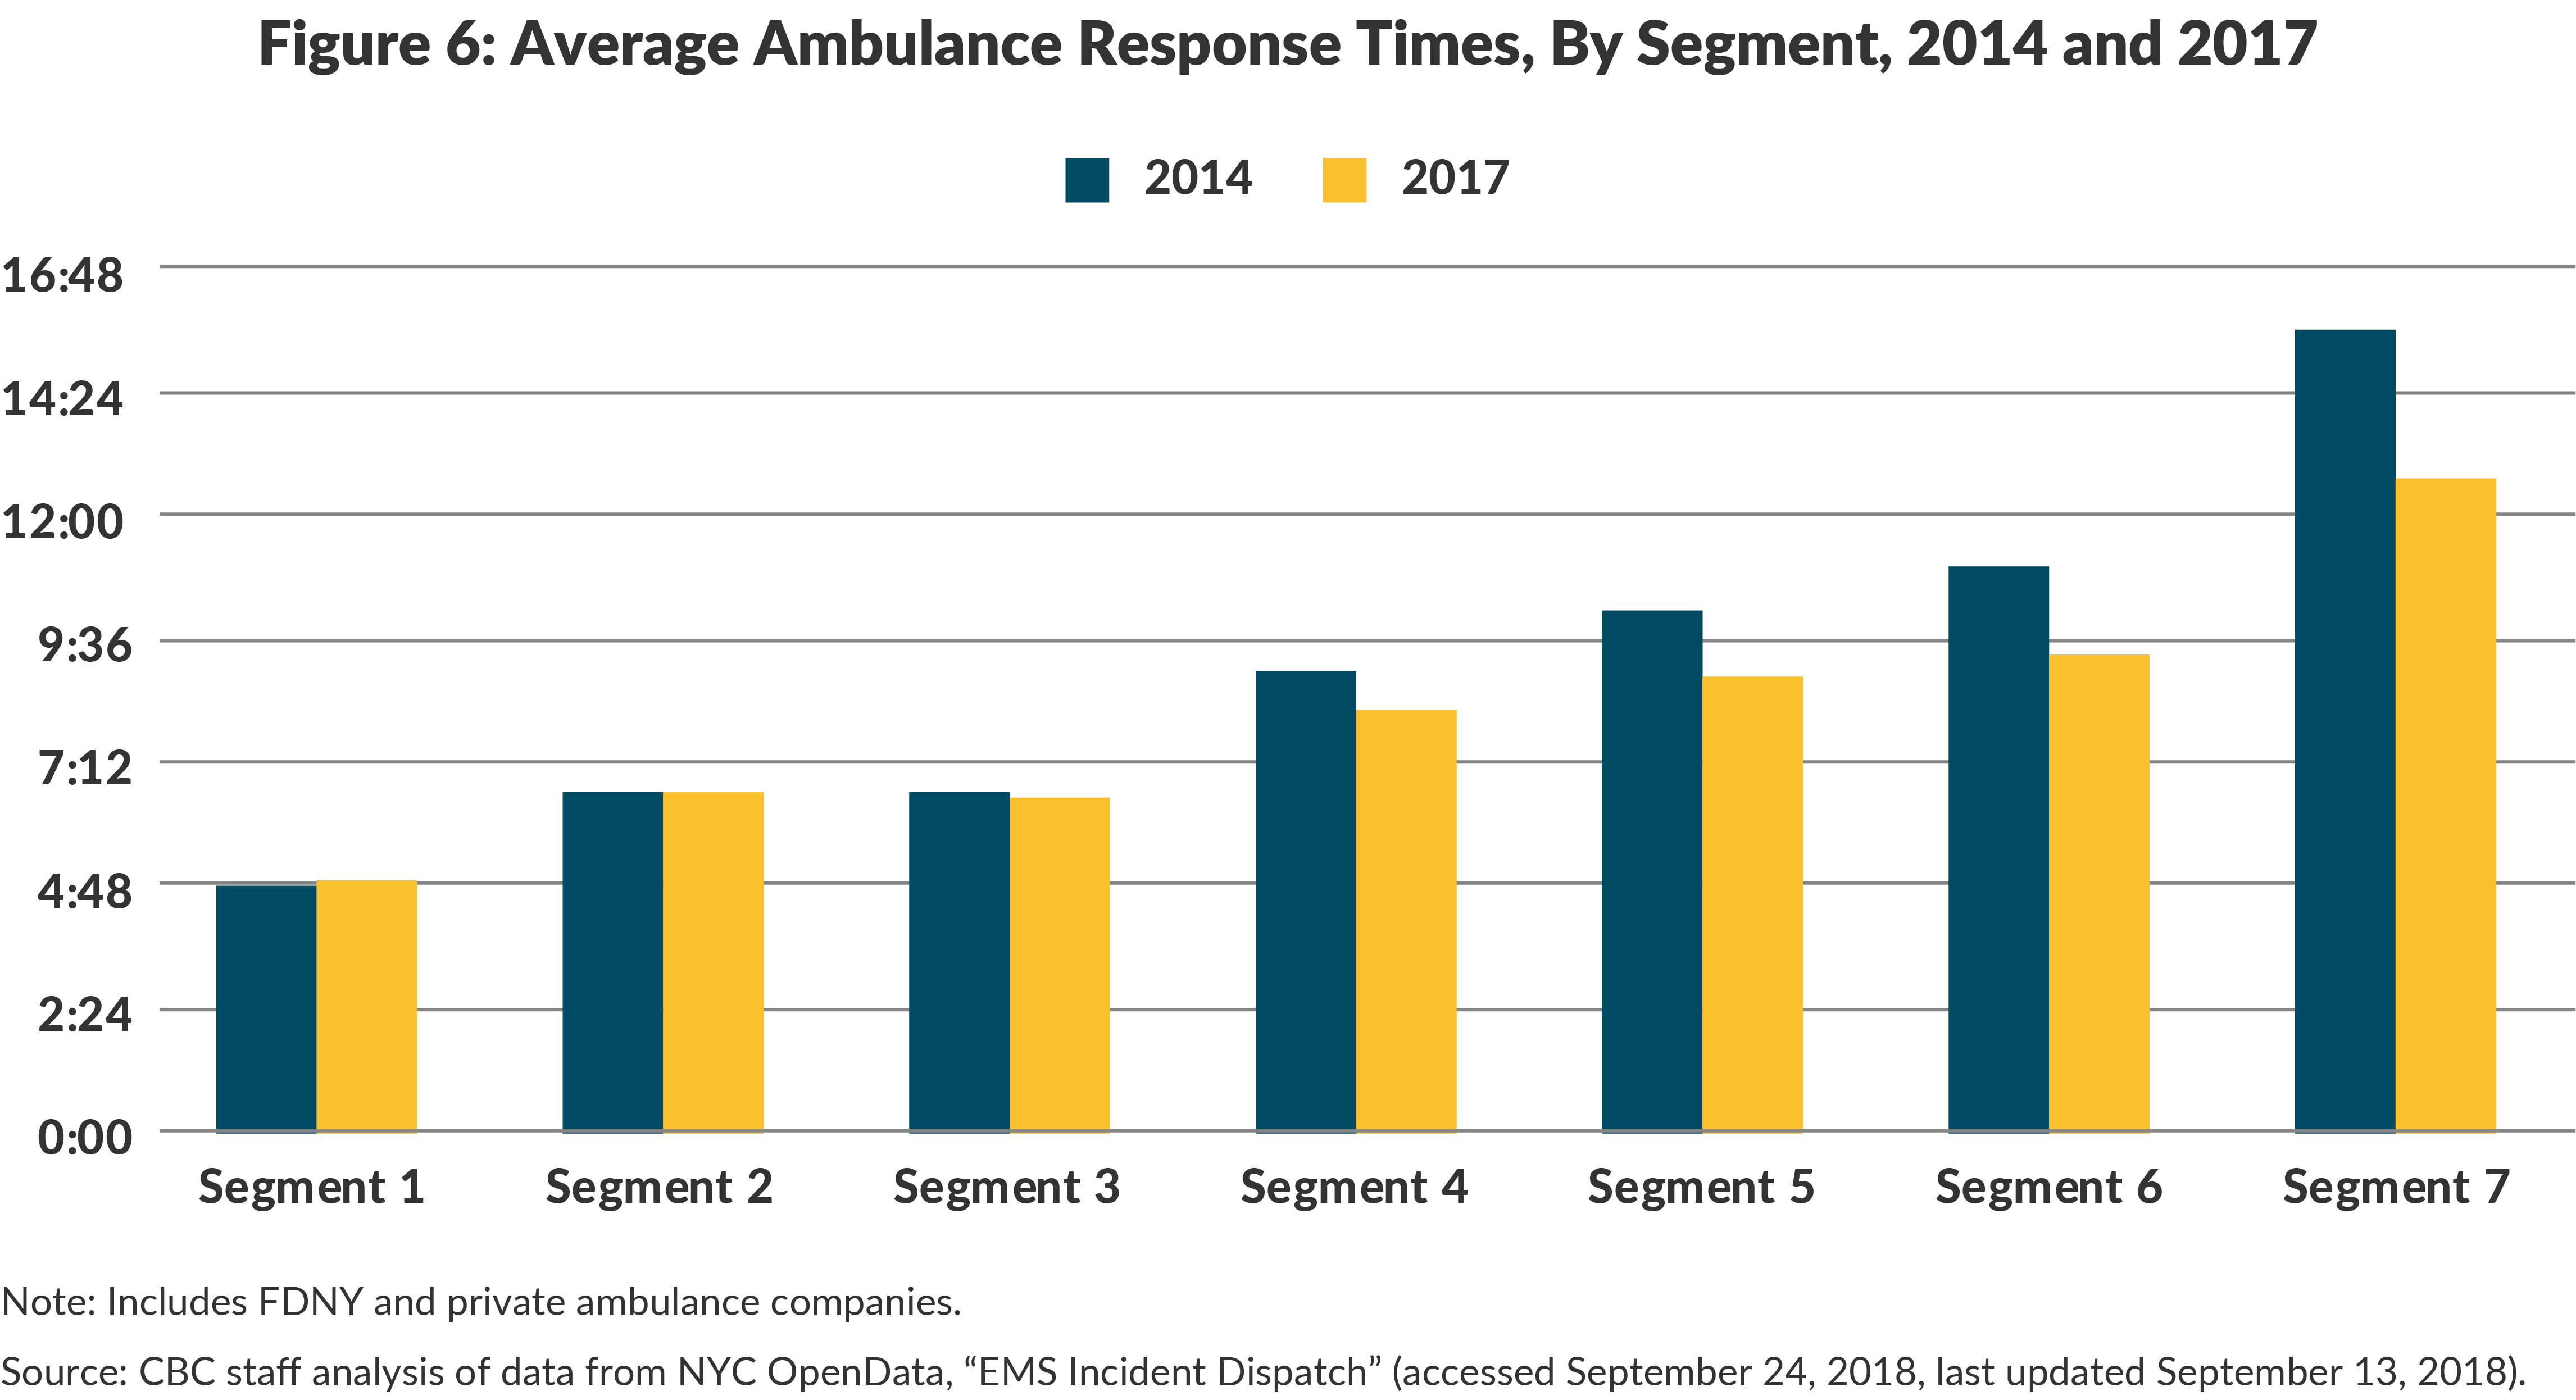 Figure 6: Average Ambulance Response Times By Segment, 2014 and 2017